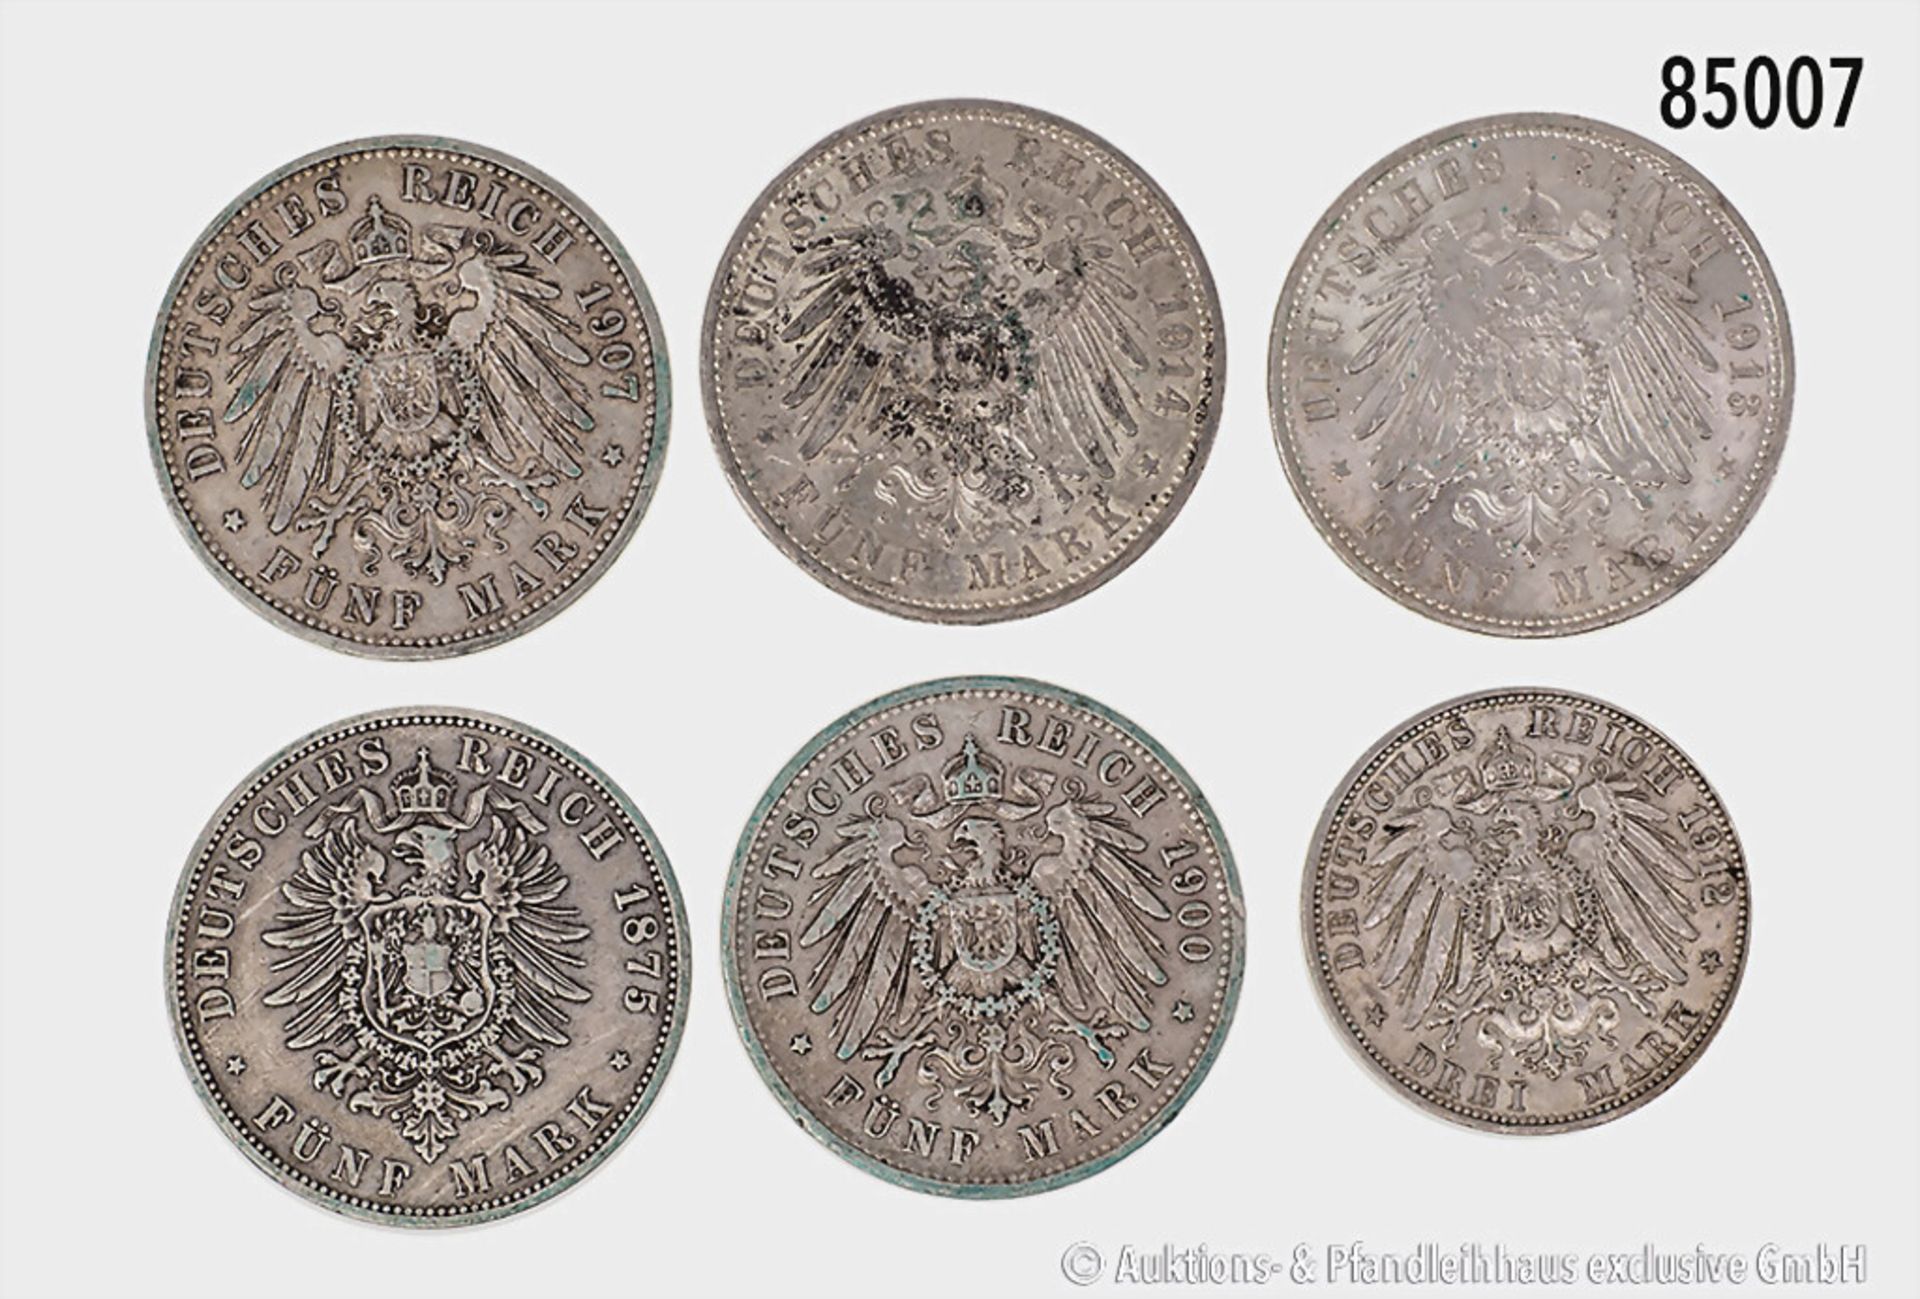 Konv. Preußen 5 Mark 1875, 1900, 1907, 1913 und 1914 A, dazu 3 Mark 1912 A, gemischter ... - Bild 2 aus 2